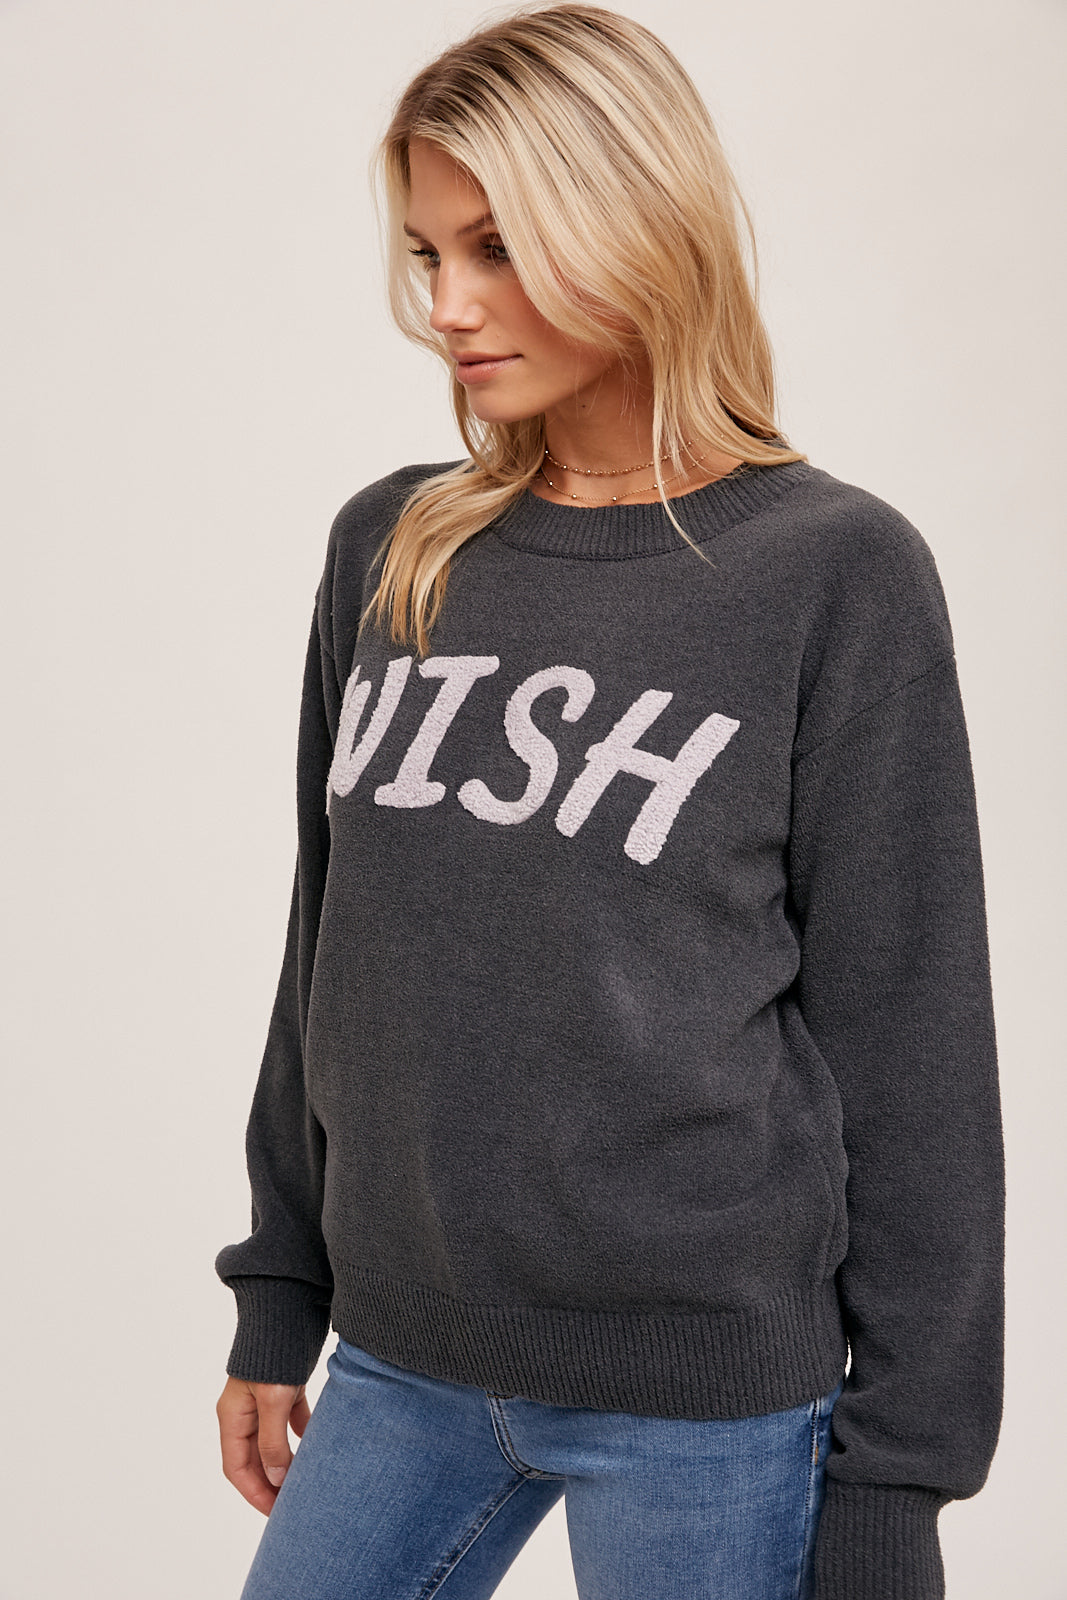 Fuzzy Wish Sweater